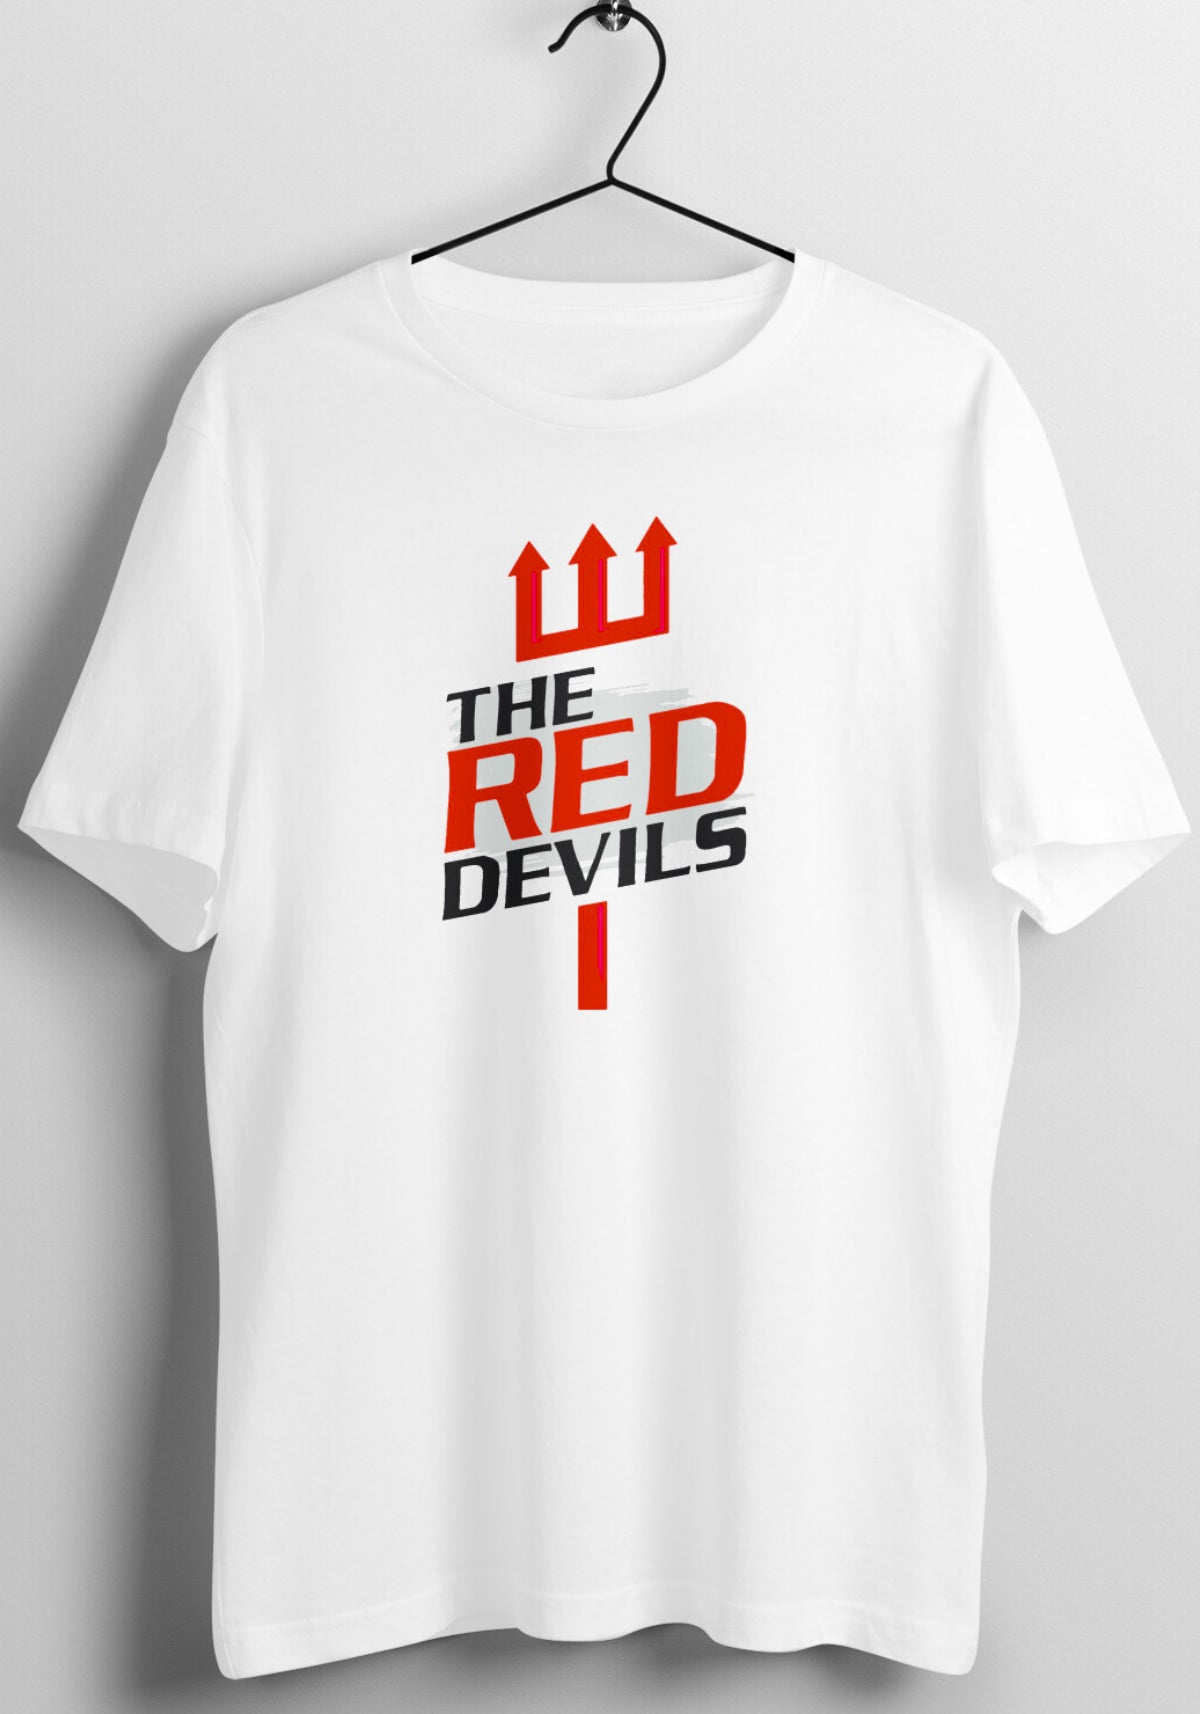 The Red Devils Man Utd Tshirt